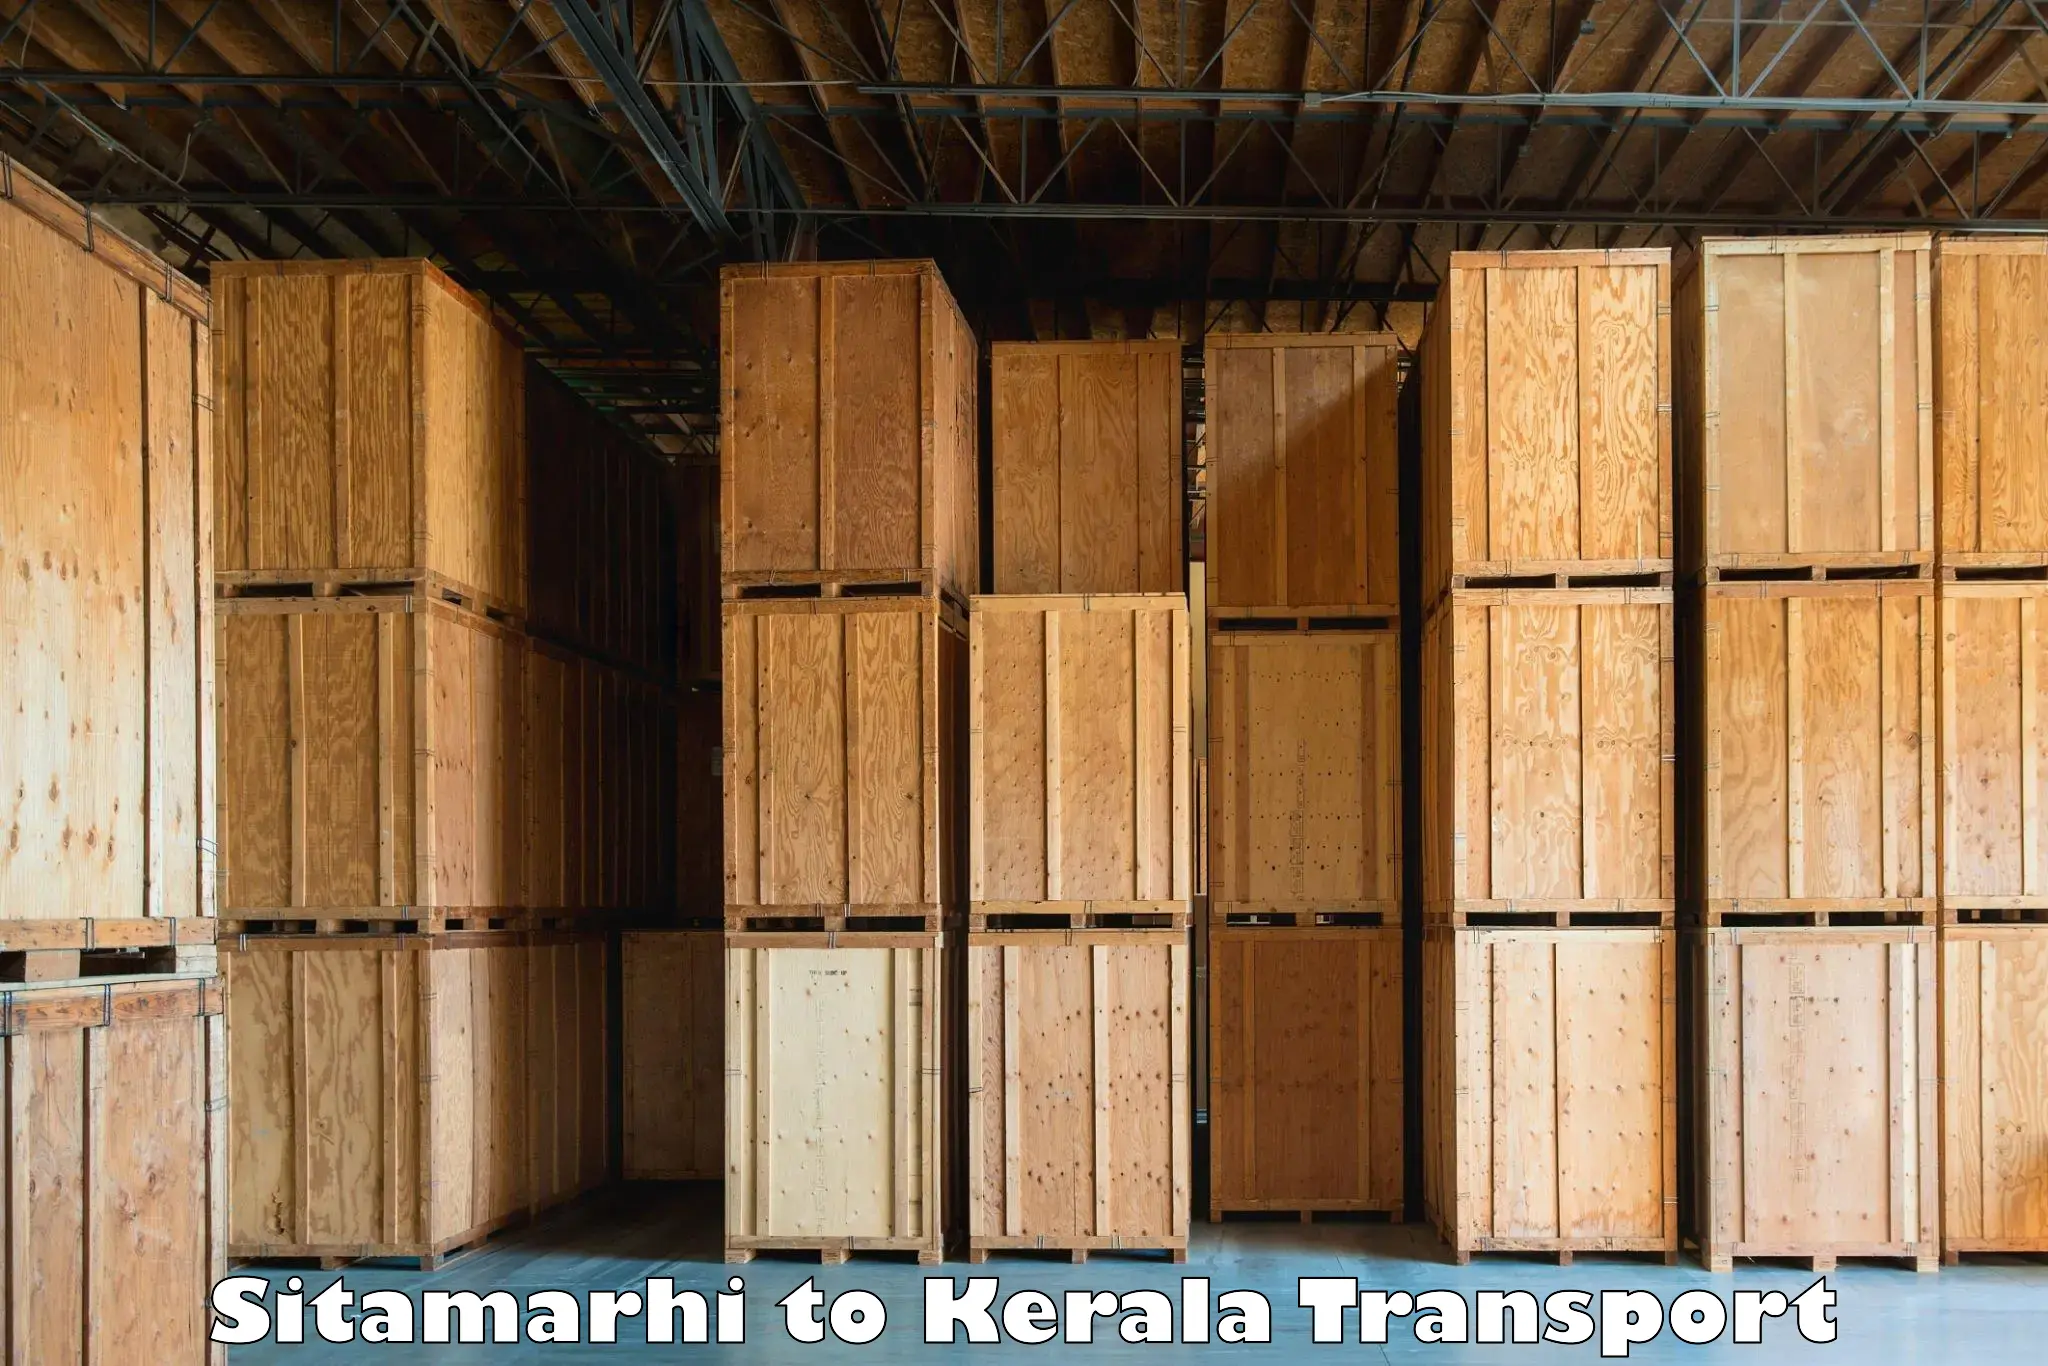 Transport in sharing Sitamarhi to Manjeshwar